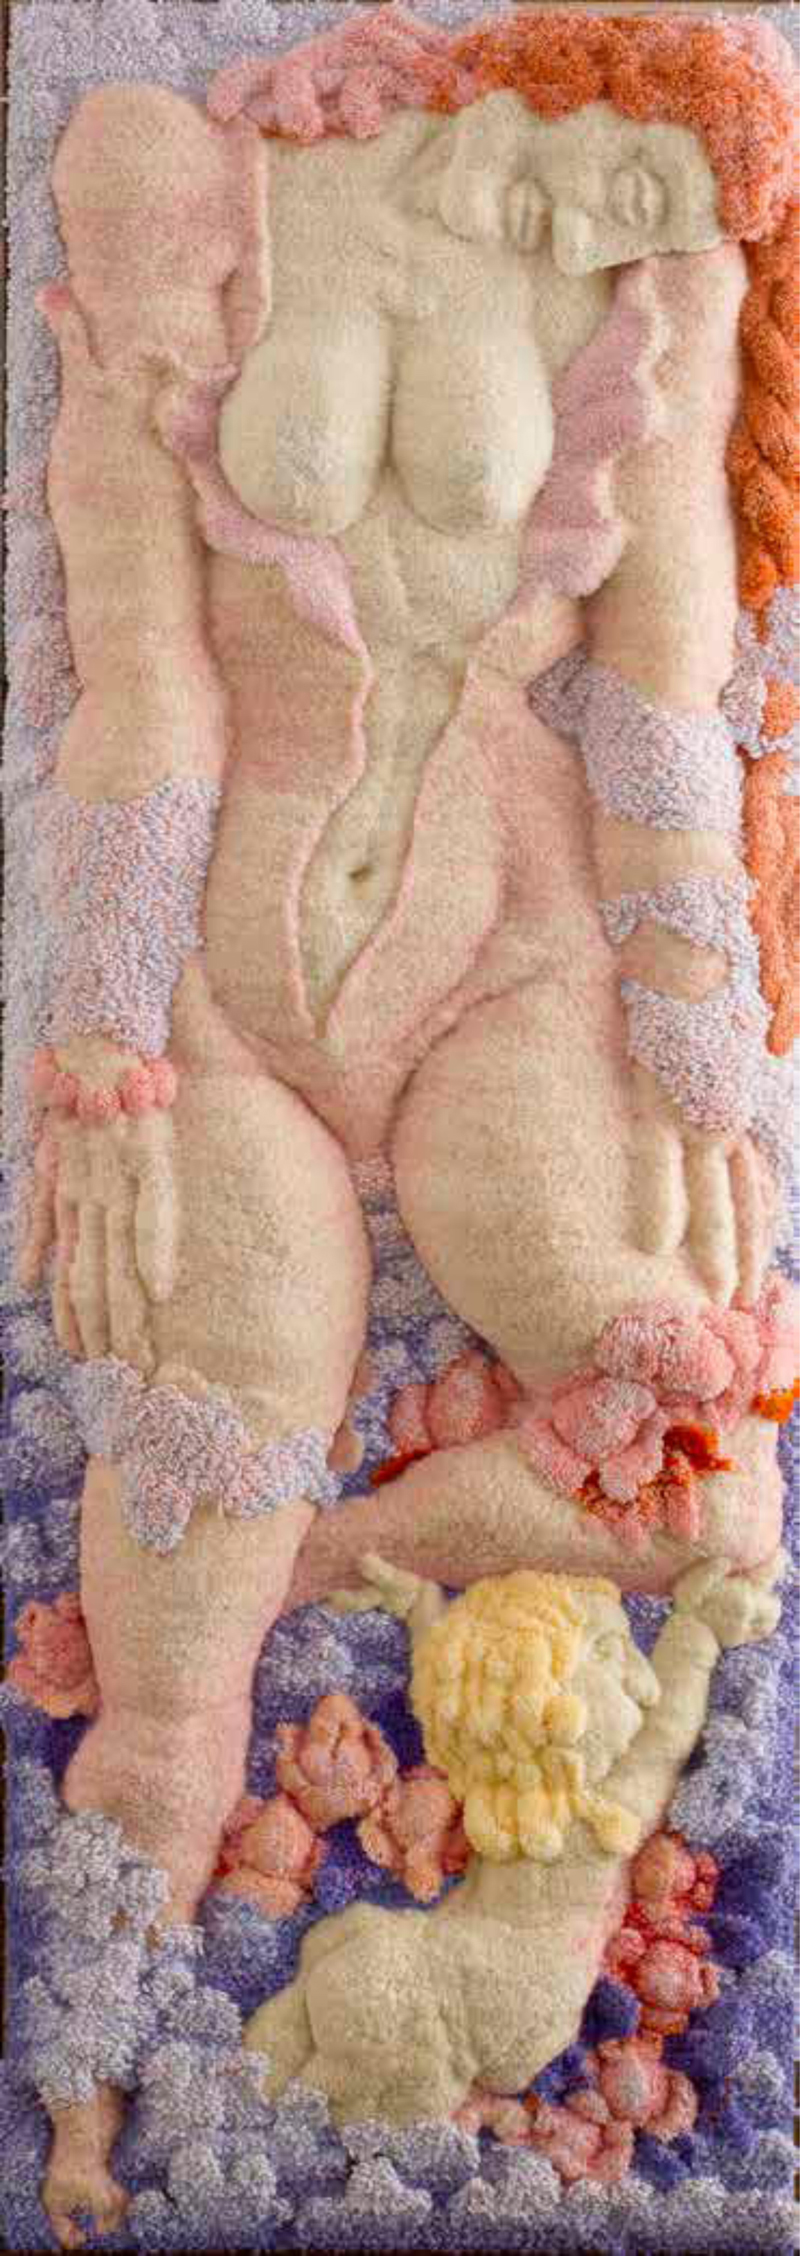 Макс ХААЗЕ - Анадиомена. 1980-е, шерсть, акрил, ручное ткачество, 200х70. Коллекция ММСИ